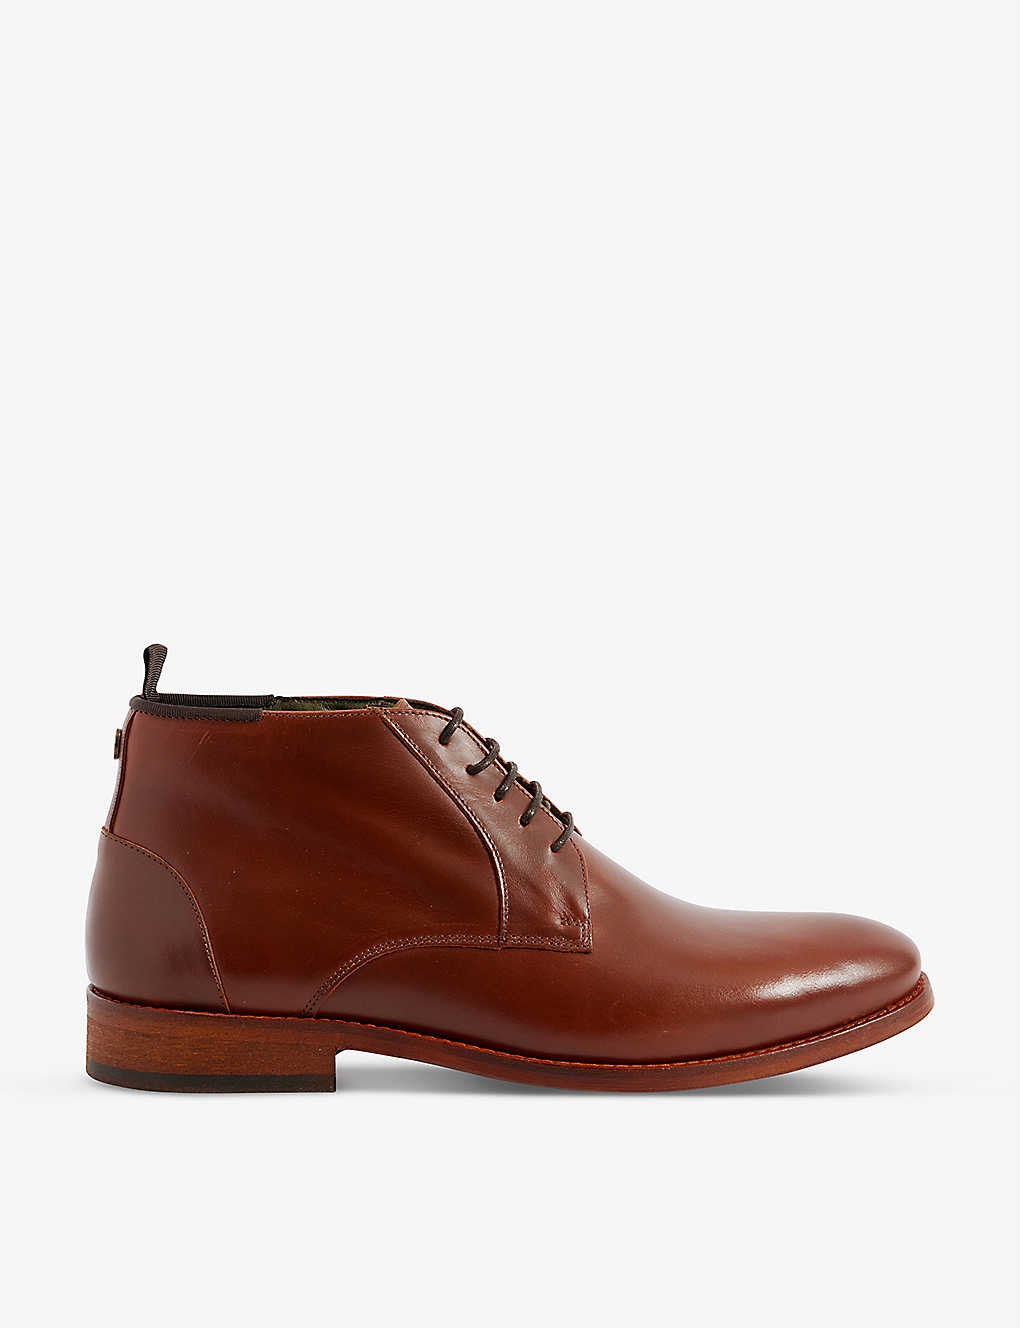 Benwell leather chukka boots - 1